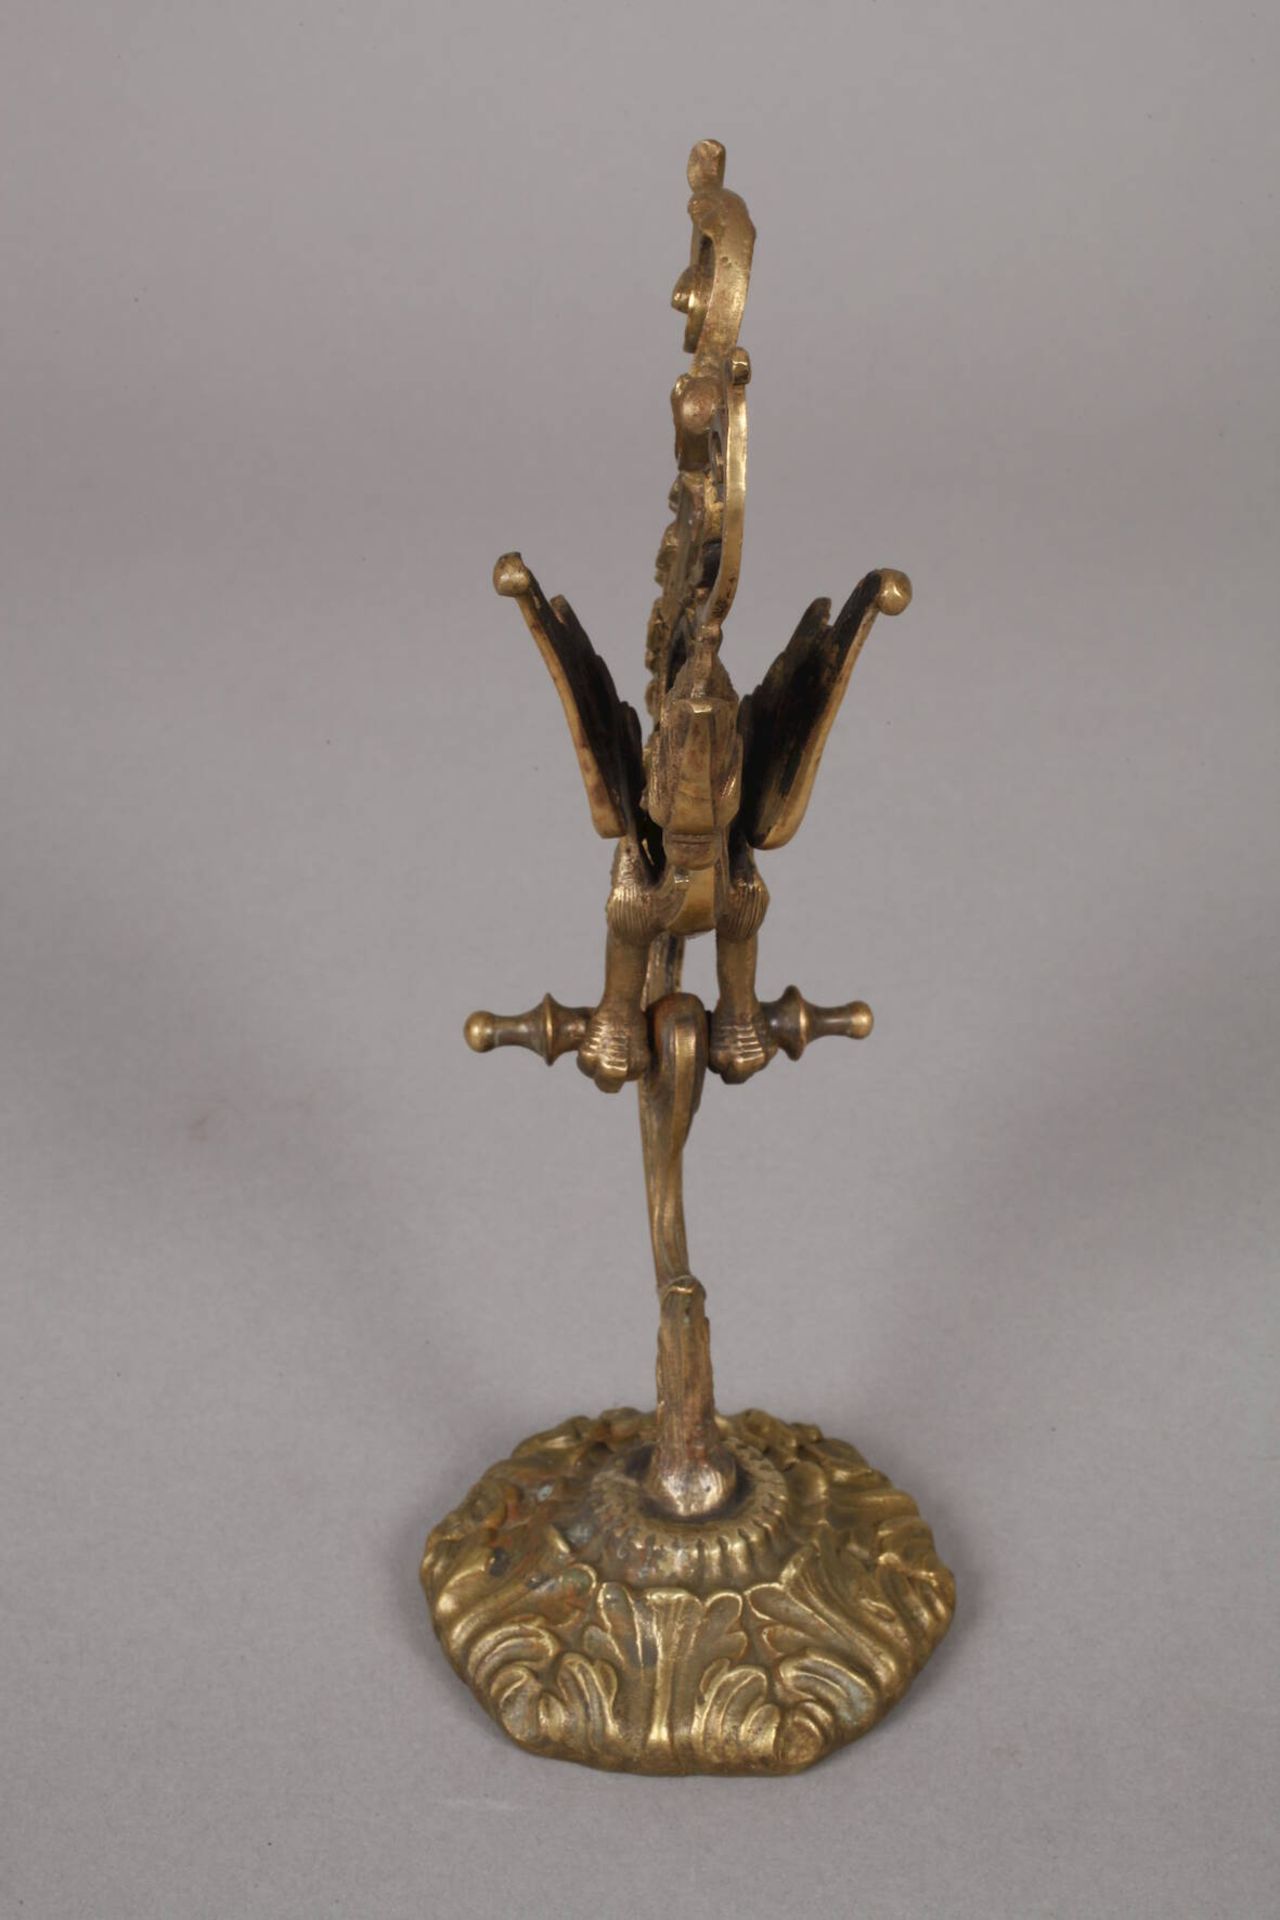 Taschenuhrenständer Bronze 2. Hälfte 19. Jh., in Form eines Greifen, fein ziseliert, H 20 cm. - Bild 3 aus 3